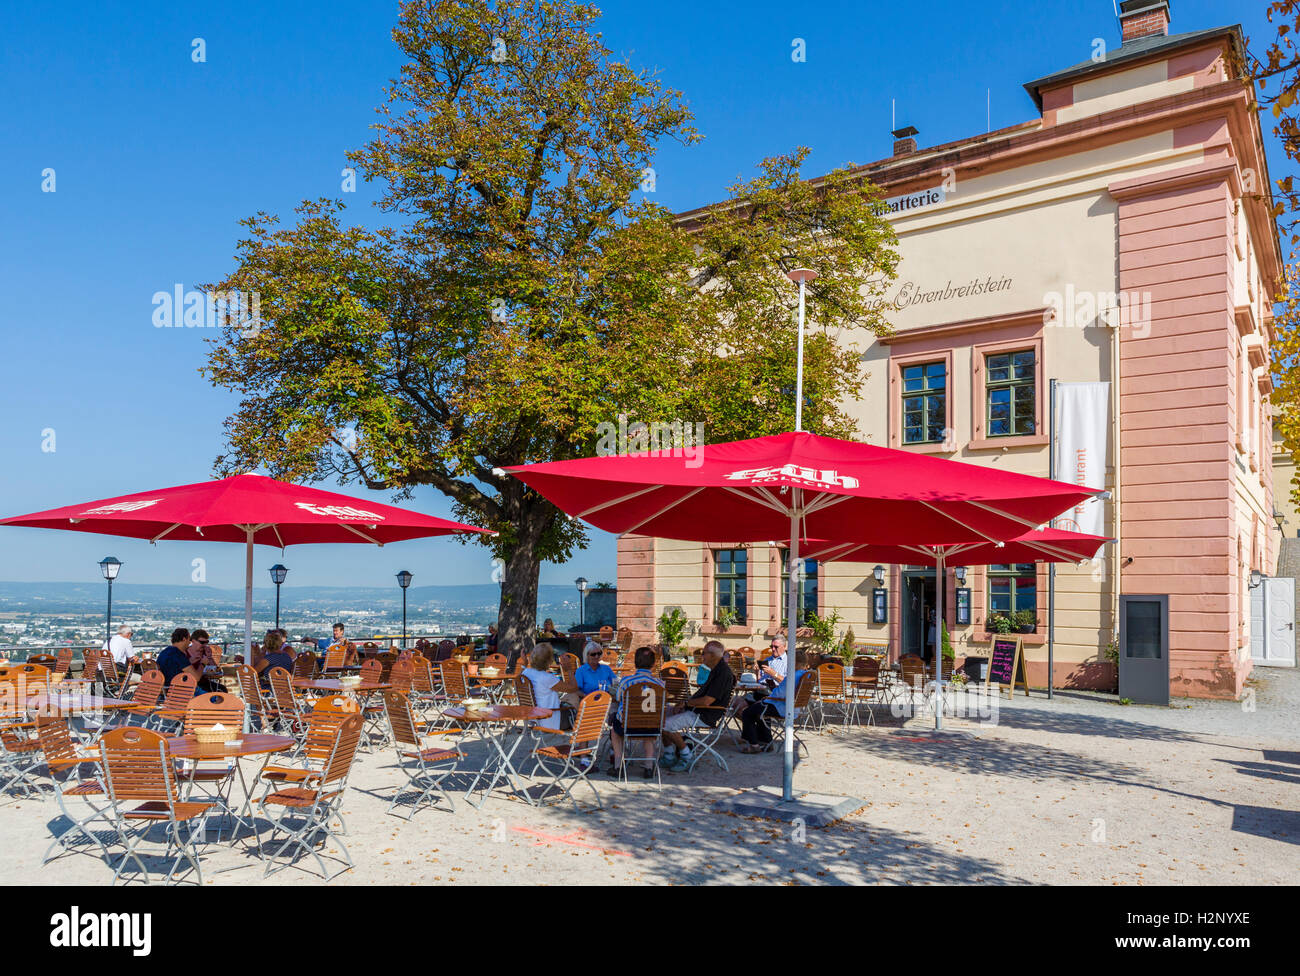 Cafe in the Festung Ehrenbreitstein (Ehrenbreitstein Fortress), Koblenz, Rhineland-Palatinate, Germany Stock Photo